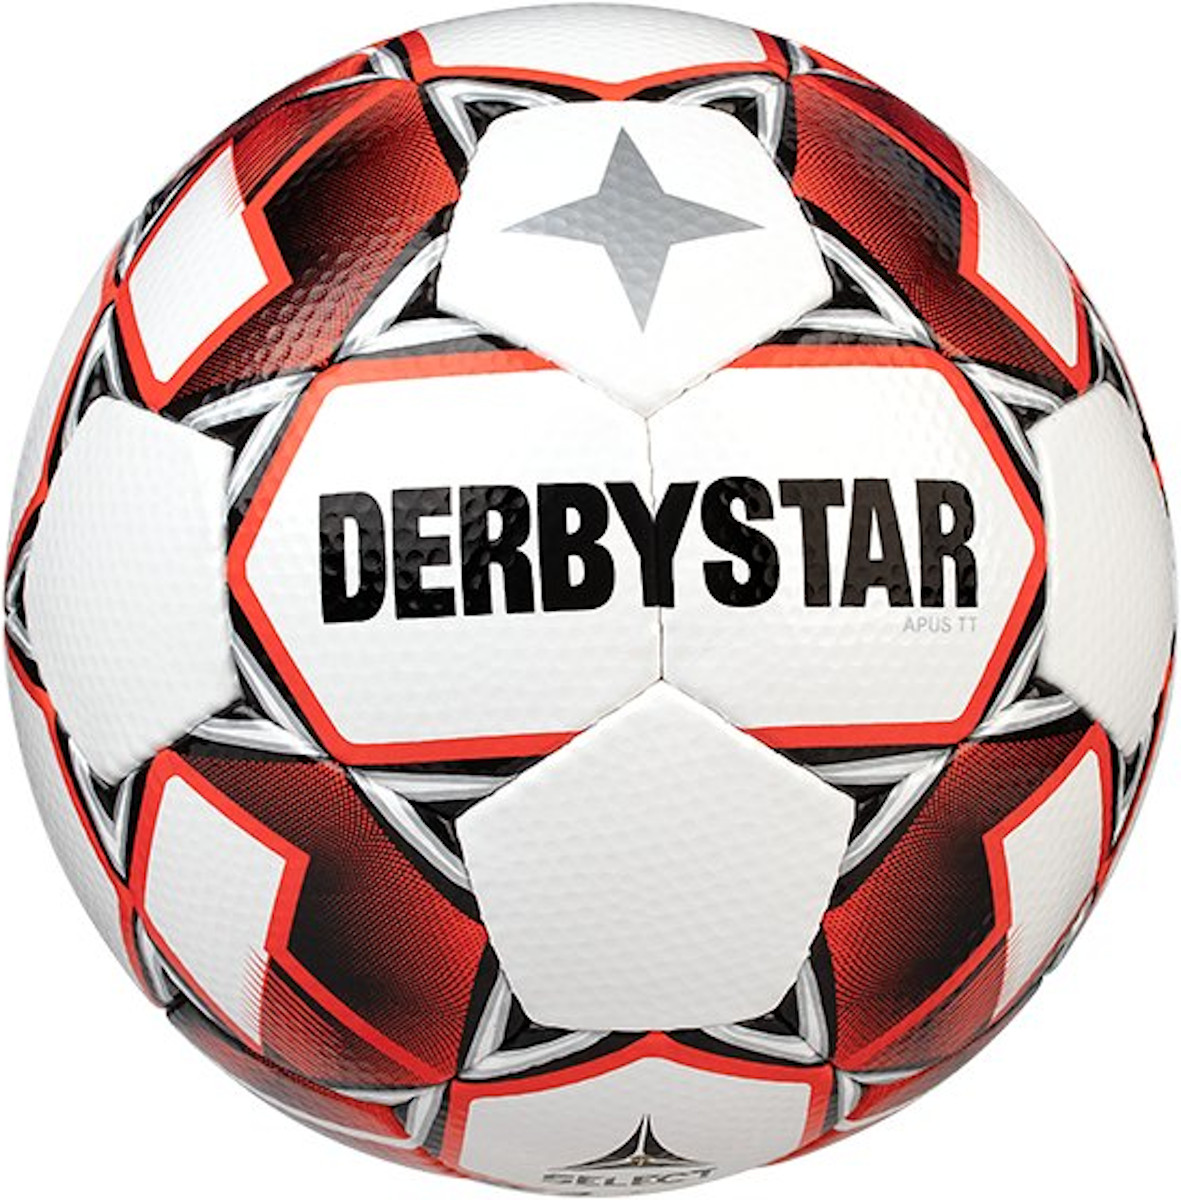 Bal Derbystar Apus TT v20 Training Ball